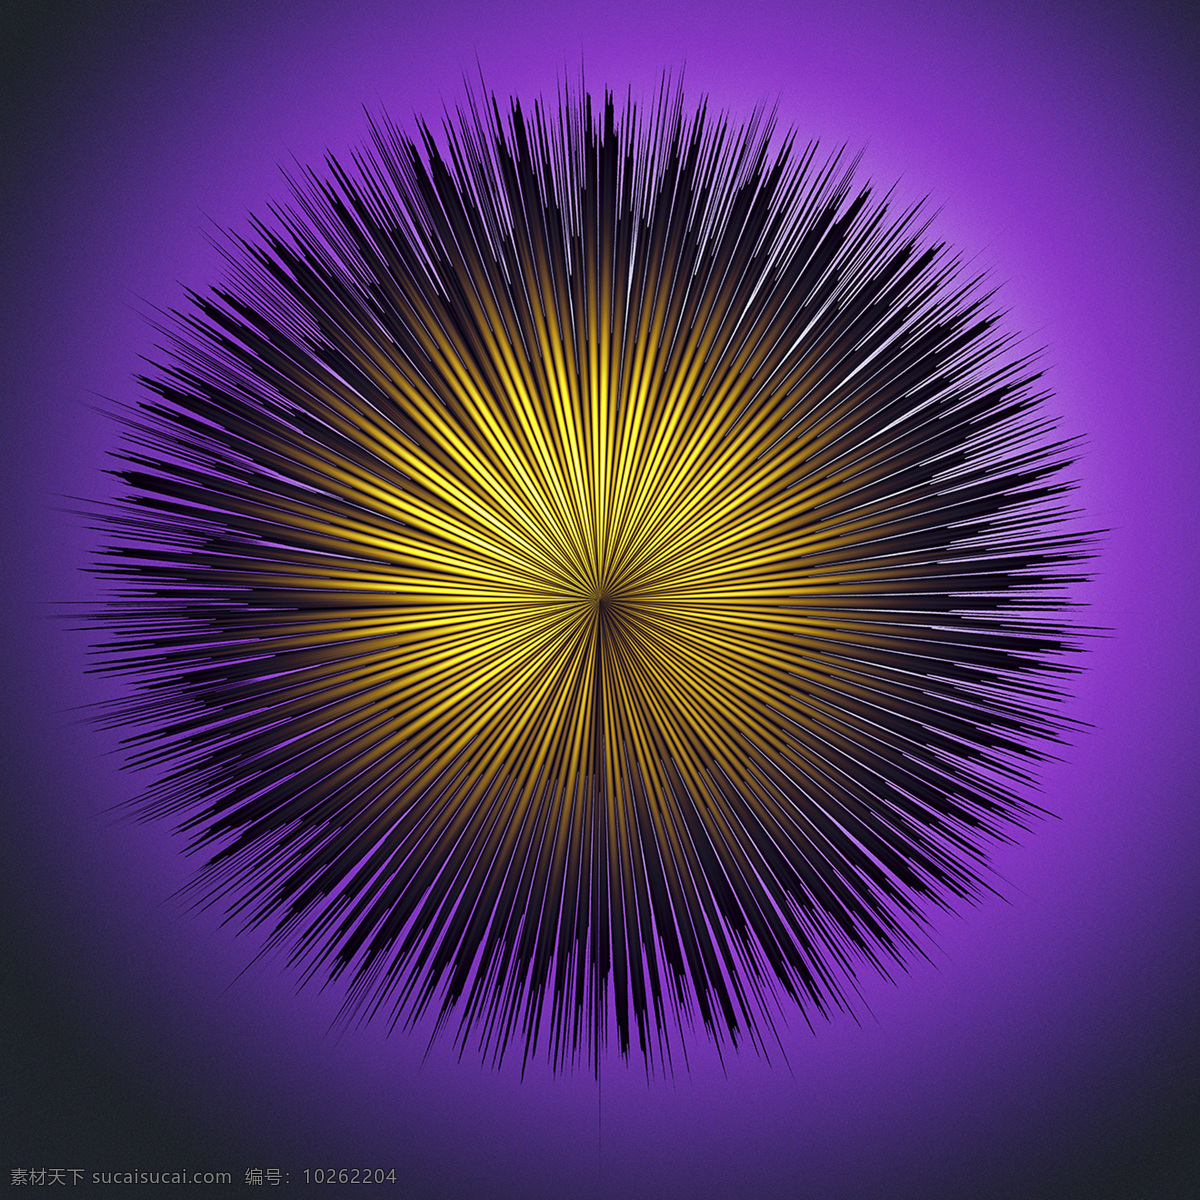 抽象图形 抽象艺术 科学研究 曼陀罗花 球形 色彩鲜艳 声波 声波图形背景 电脑绘图 图形 声音图形 科技作品 斑斓图案 声音的样子 催眠图案 波形 刺球 环状 尖锐 声波图形图像 现代科技 矢量图